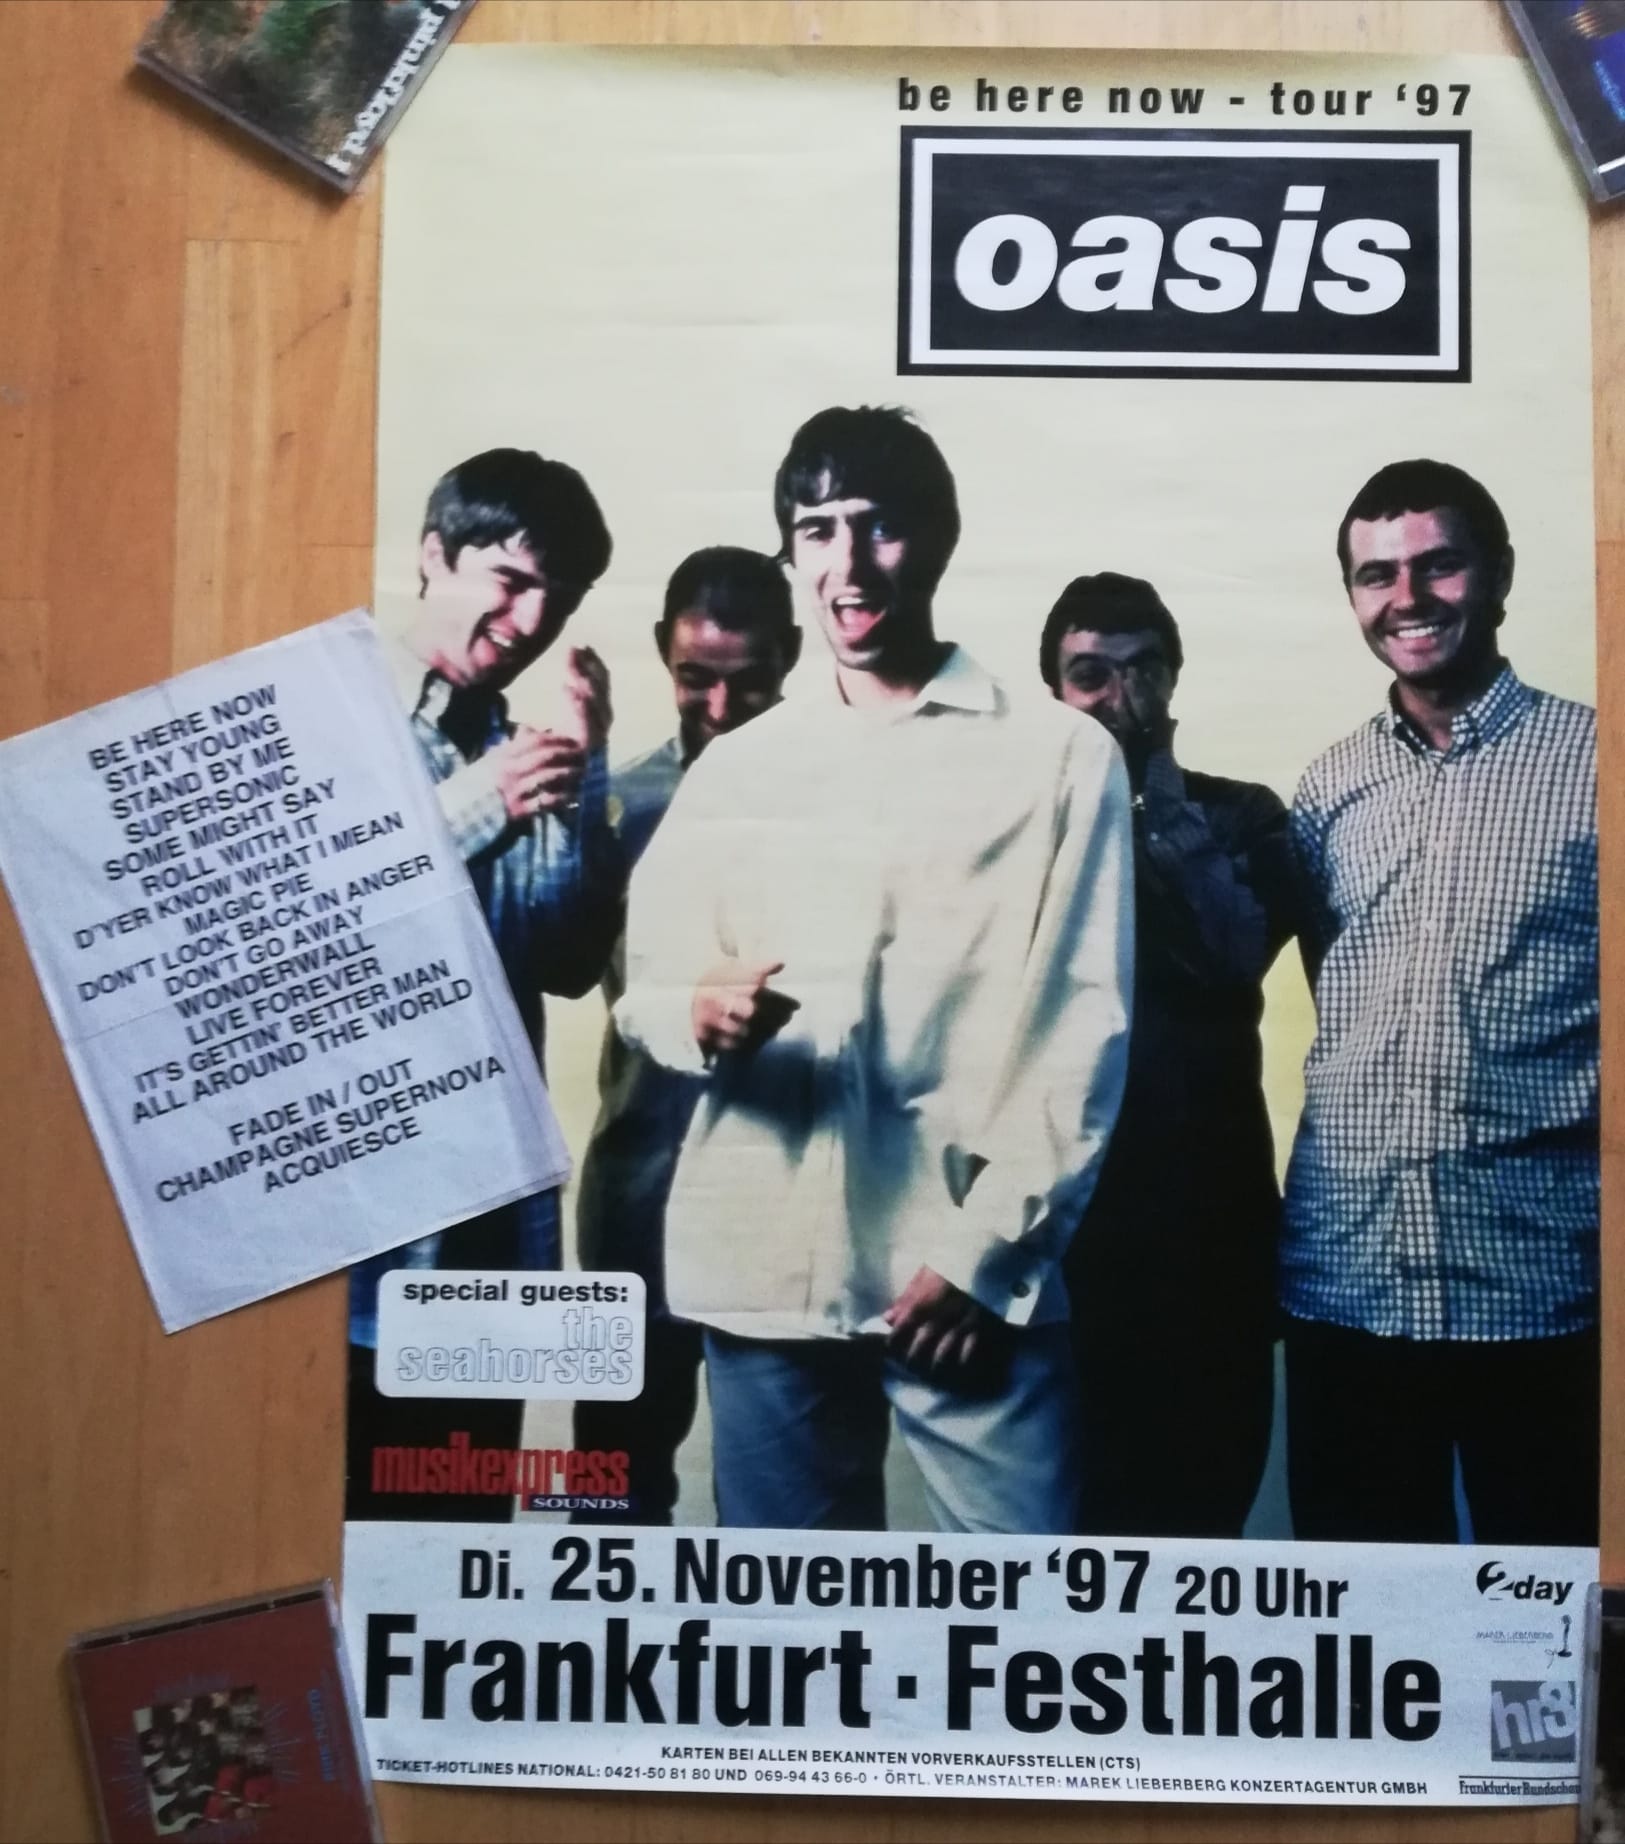 Oasis at Festhalle; Frankfurt, Germany - November 25, 1997